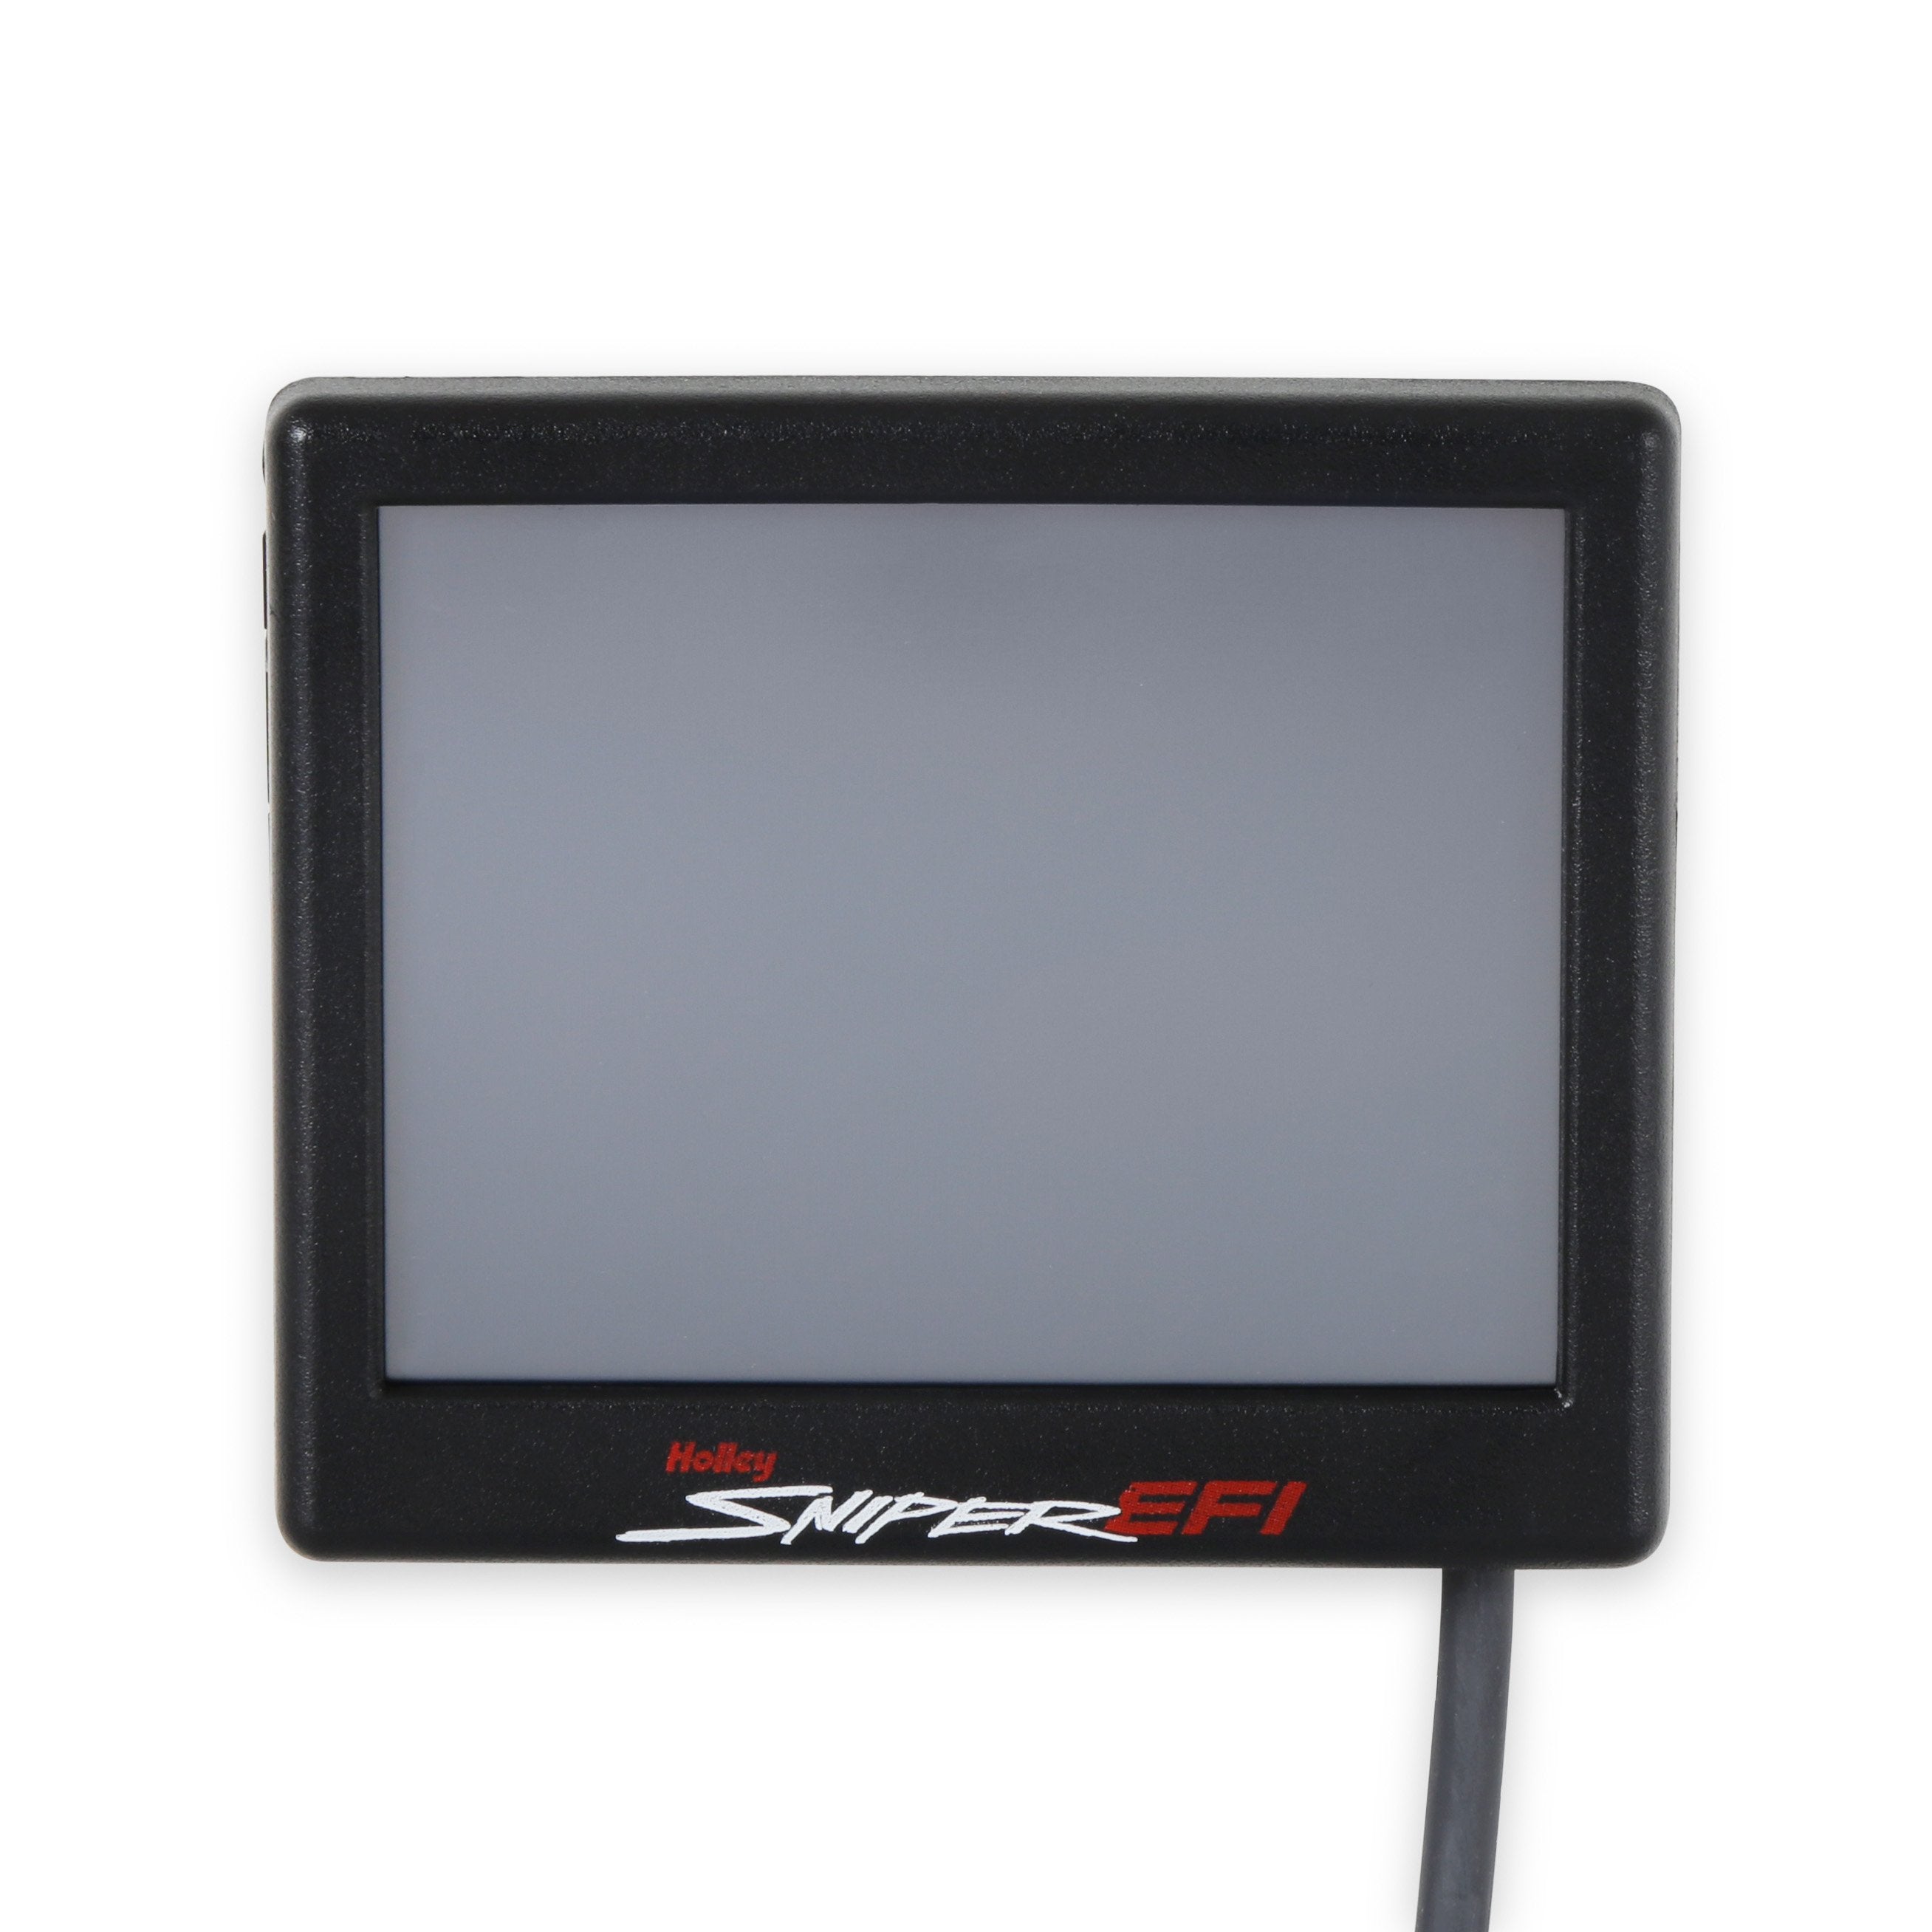 Sniper Motorsports 550-511-3AX SNIPER 2 EFI UPGRADE KIT - BLACK